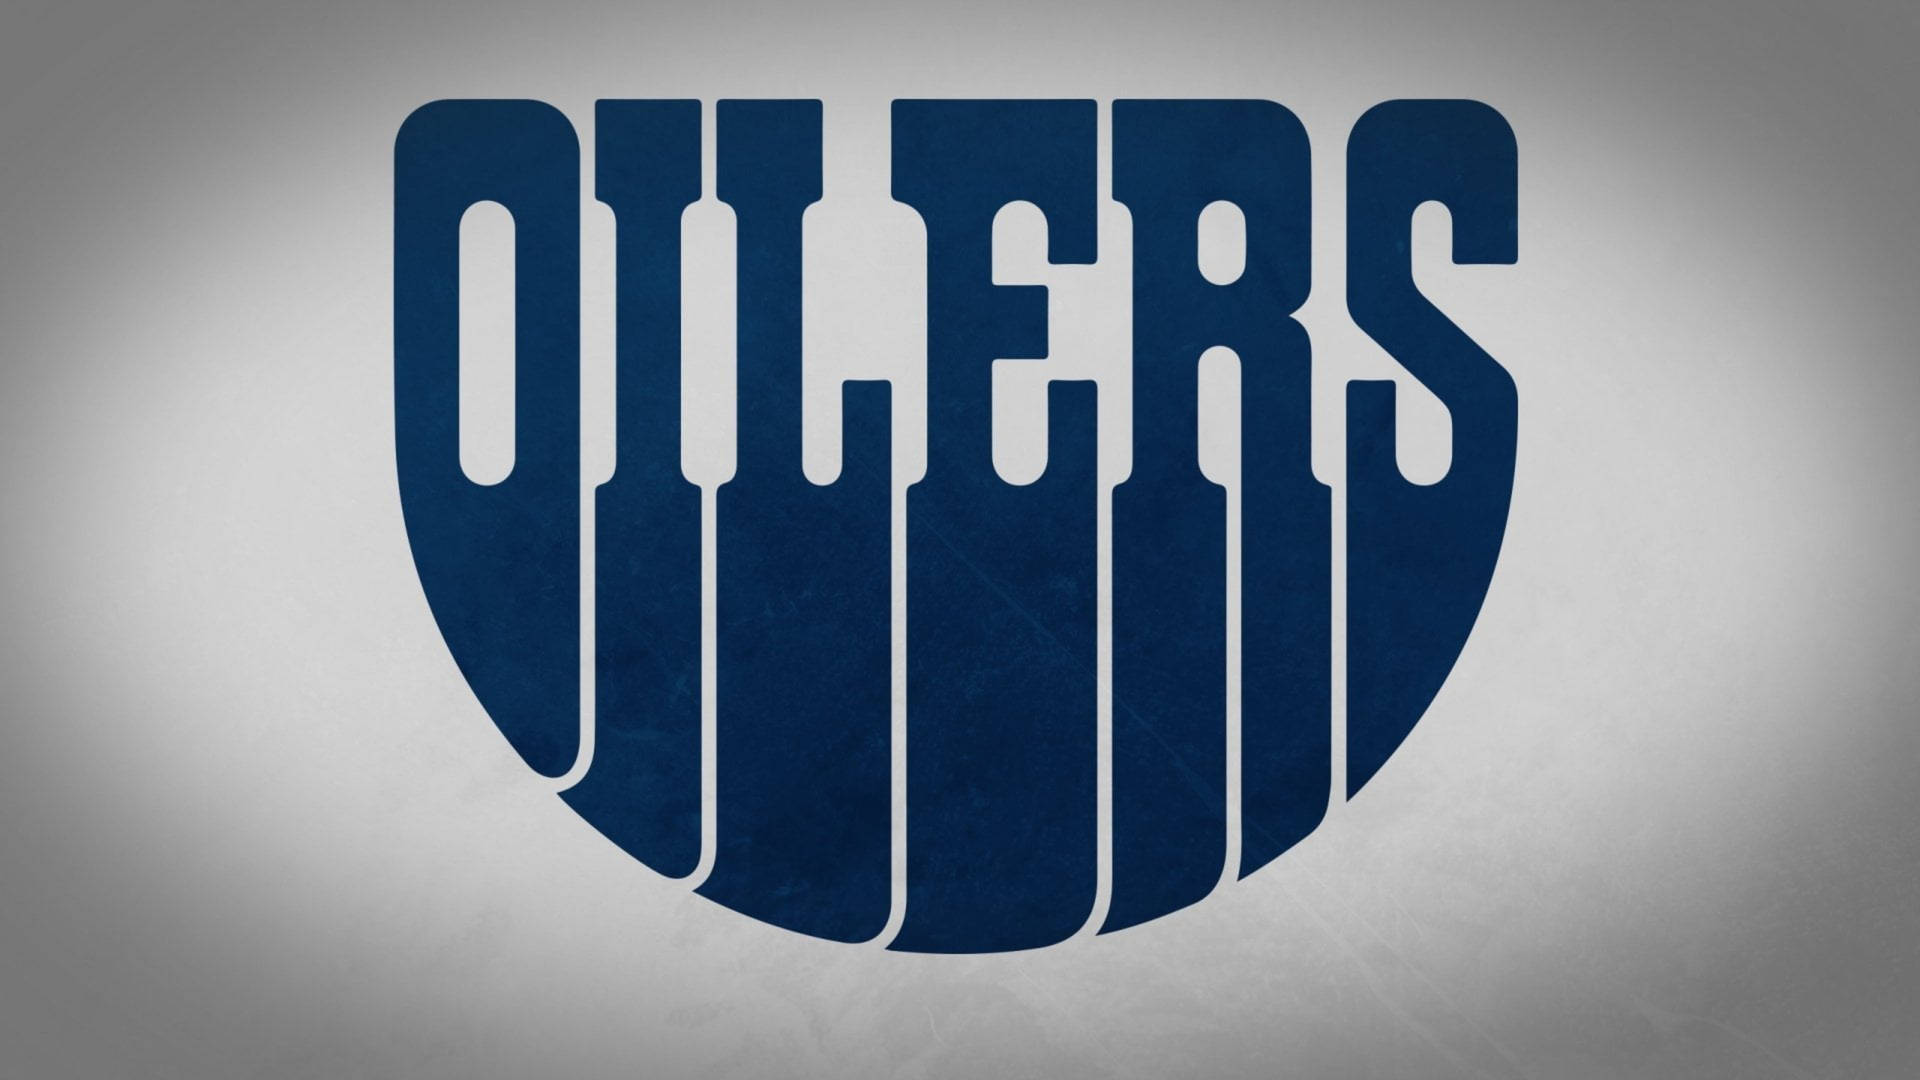 Edmonton Oilers Nhl Minimalist Blue Background